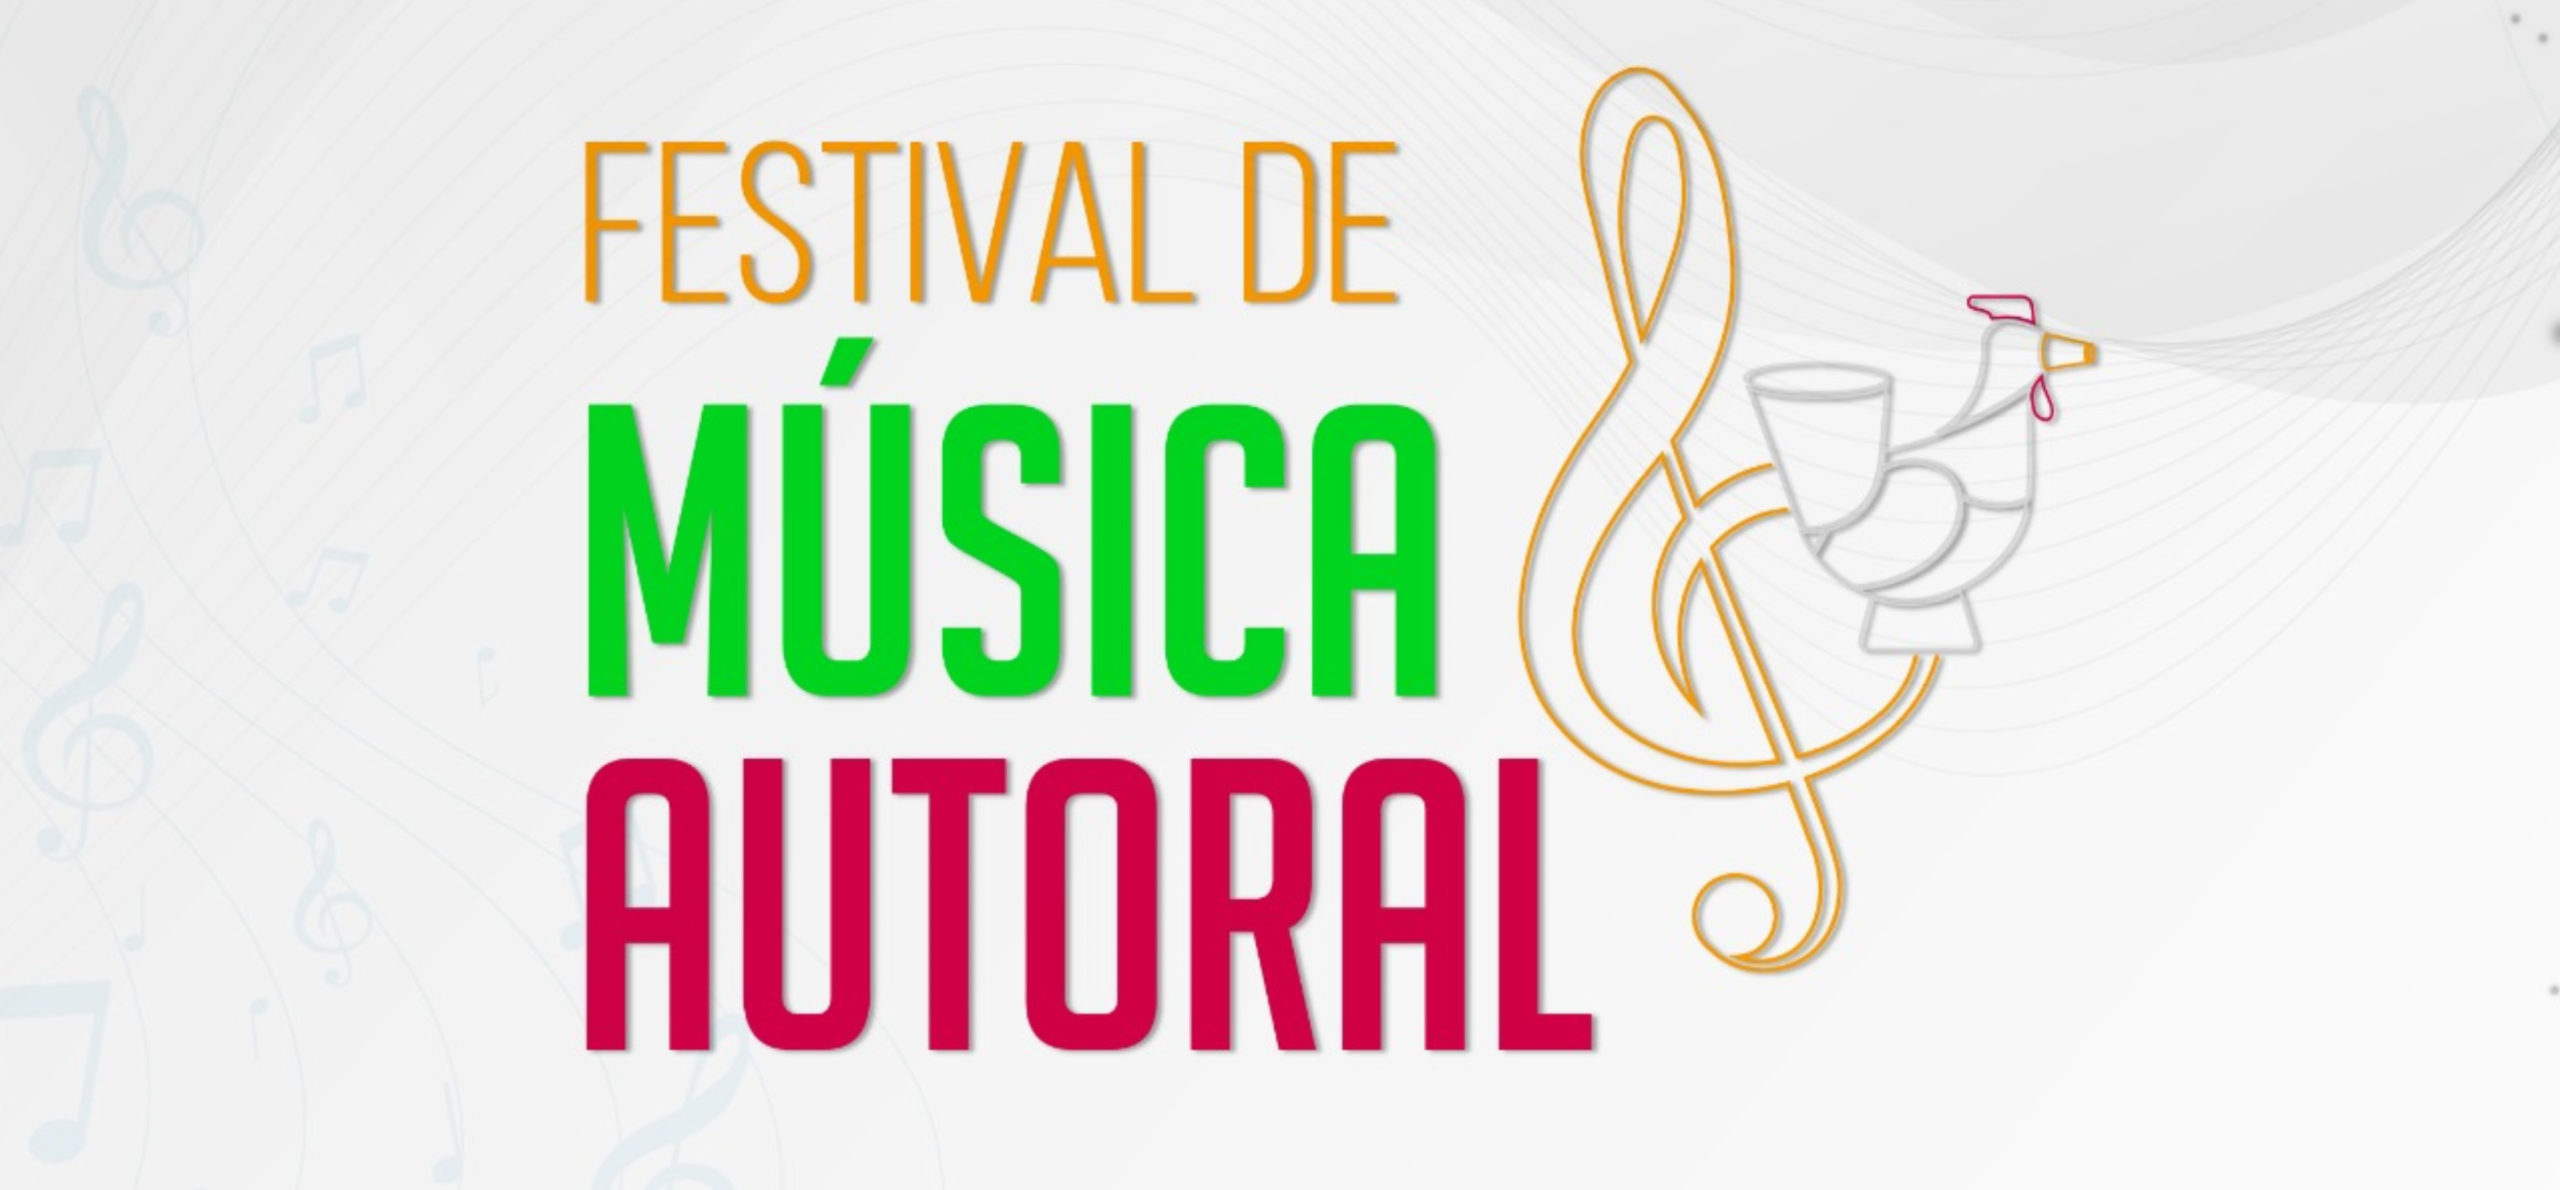 Abertas as inscrições para o Festival de Música Autoral; Serão R$ 22 mil em premiação para os vencedores